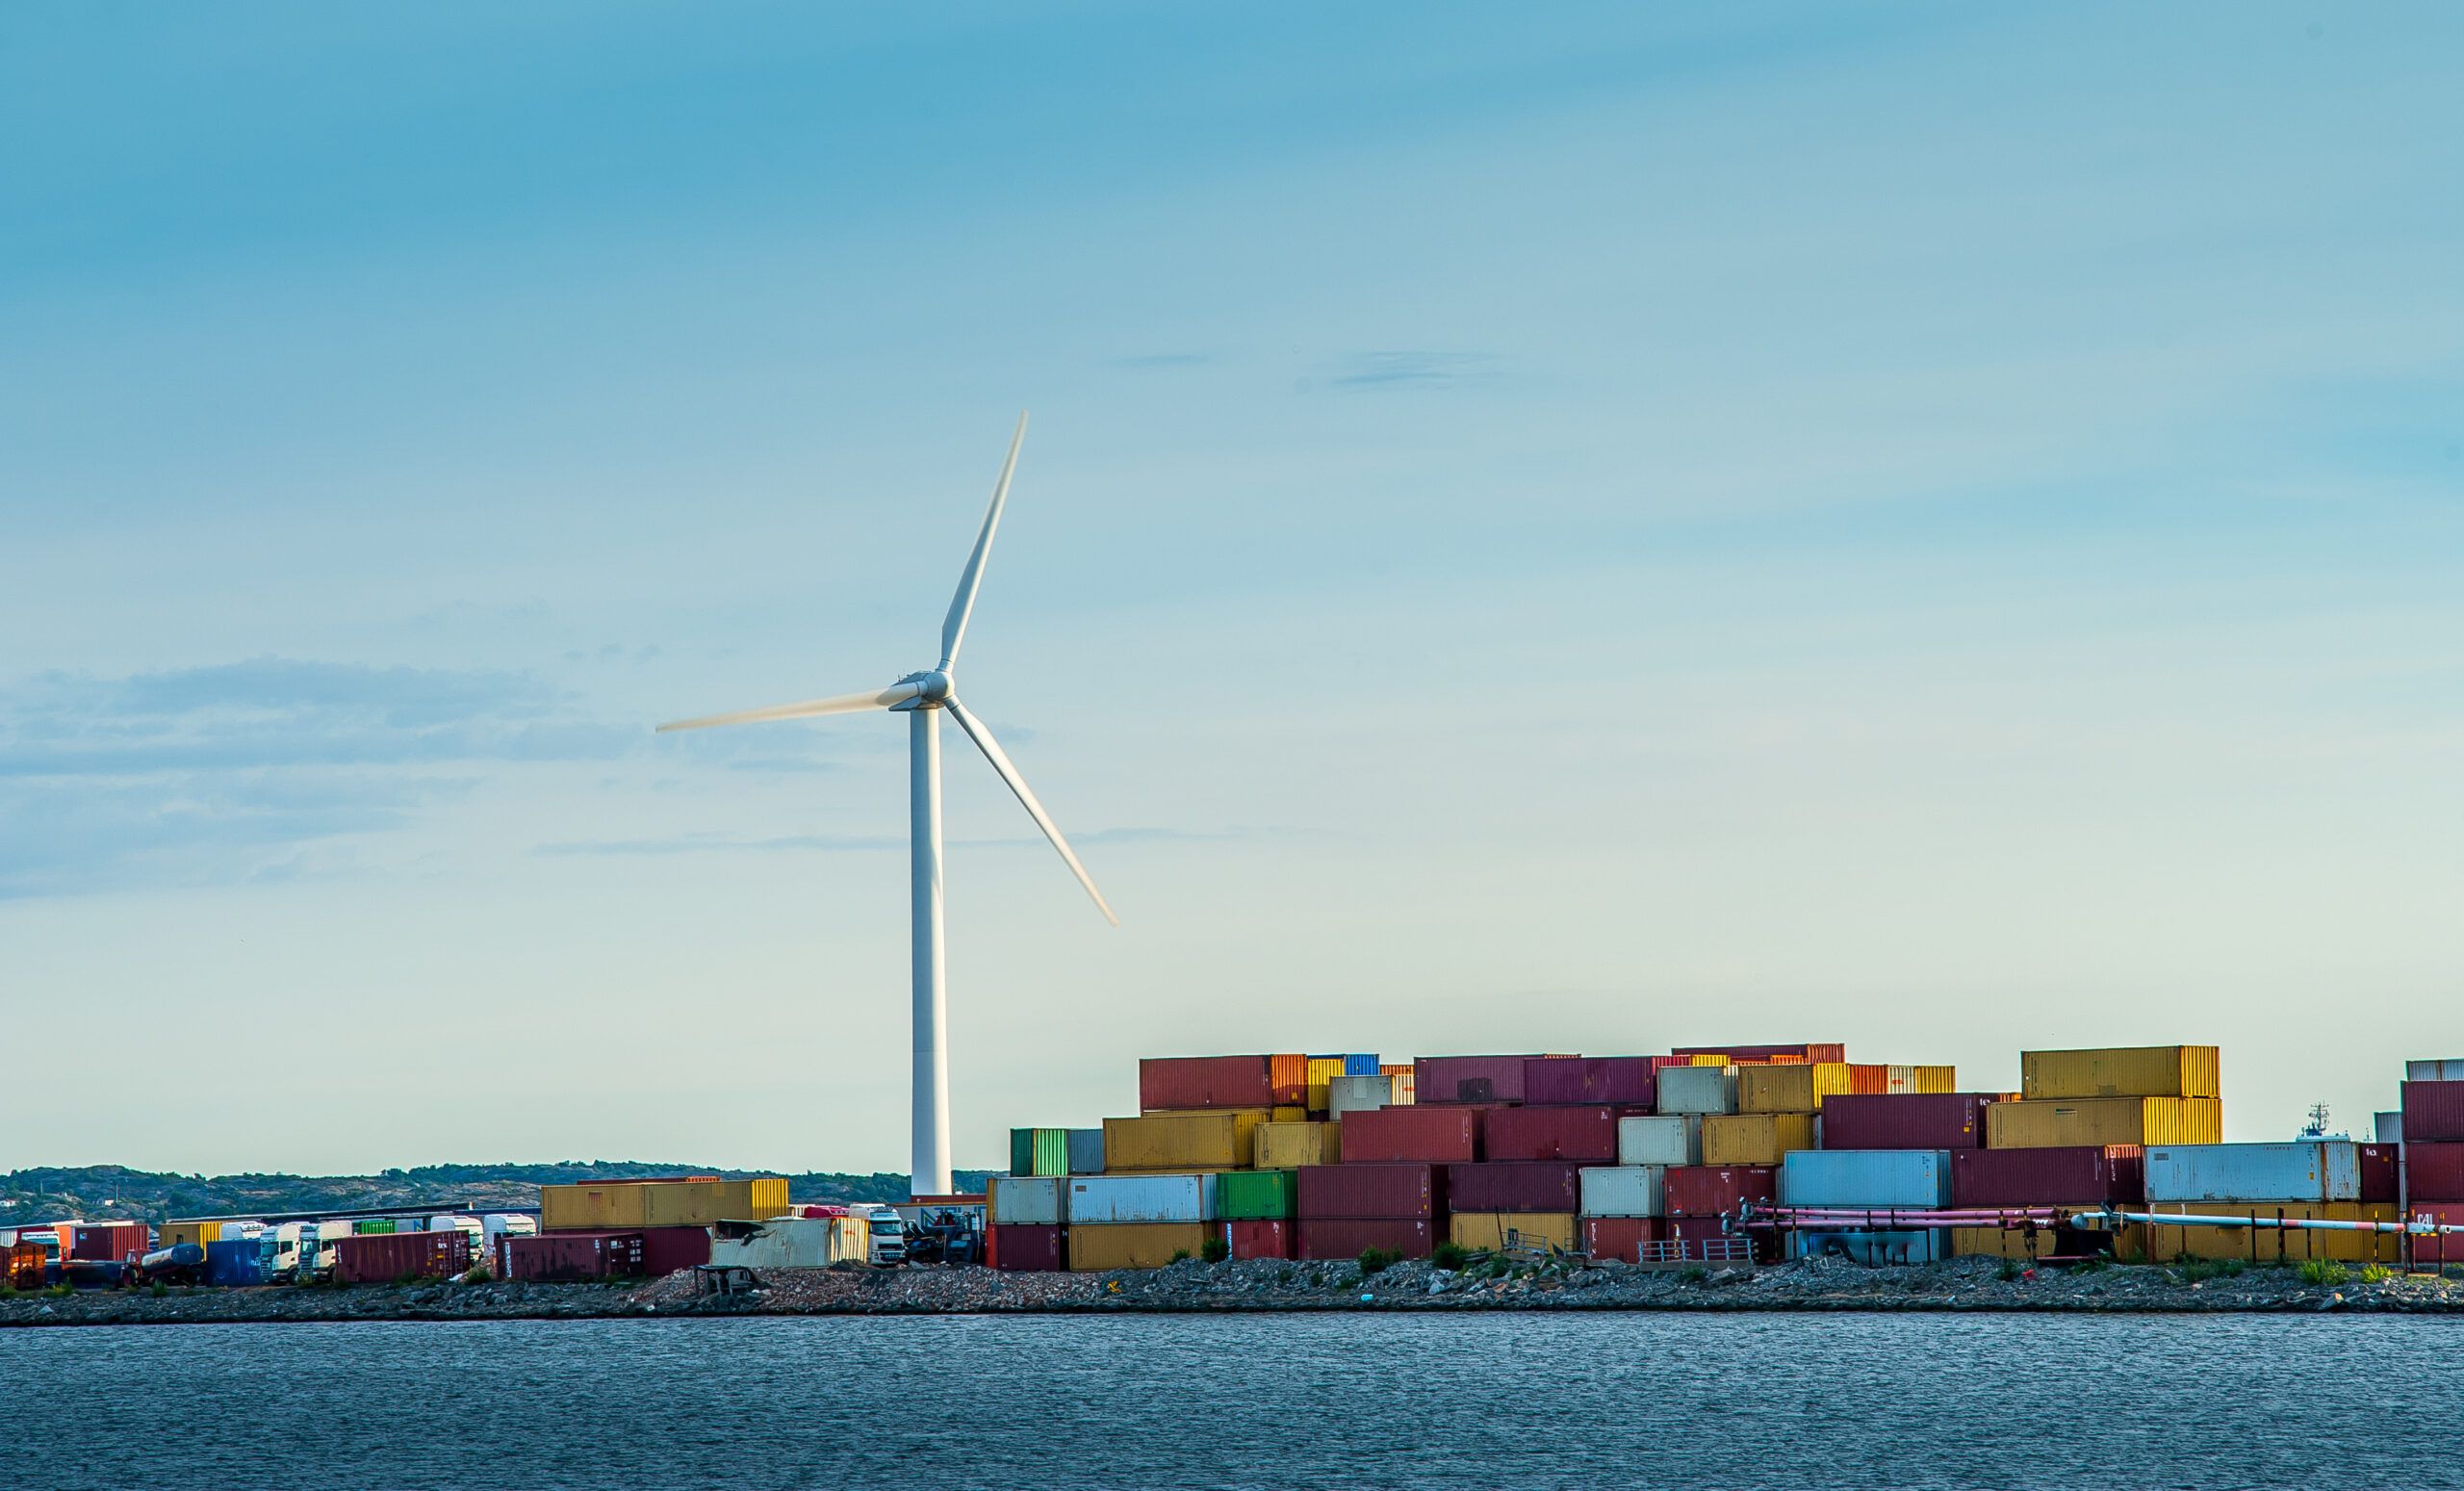 Investigar las posibilidades de generar energía renovable es una solución posible para algunos puertos. (GettyImages) 